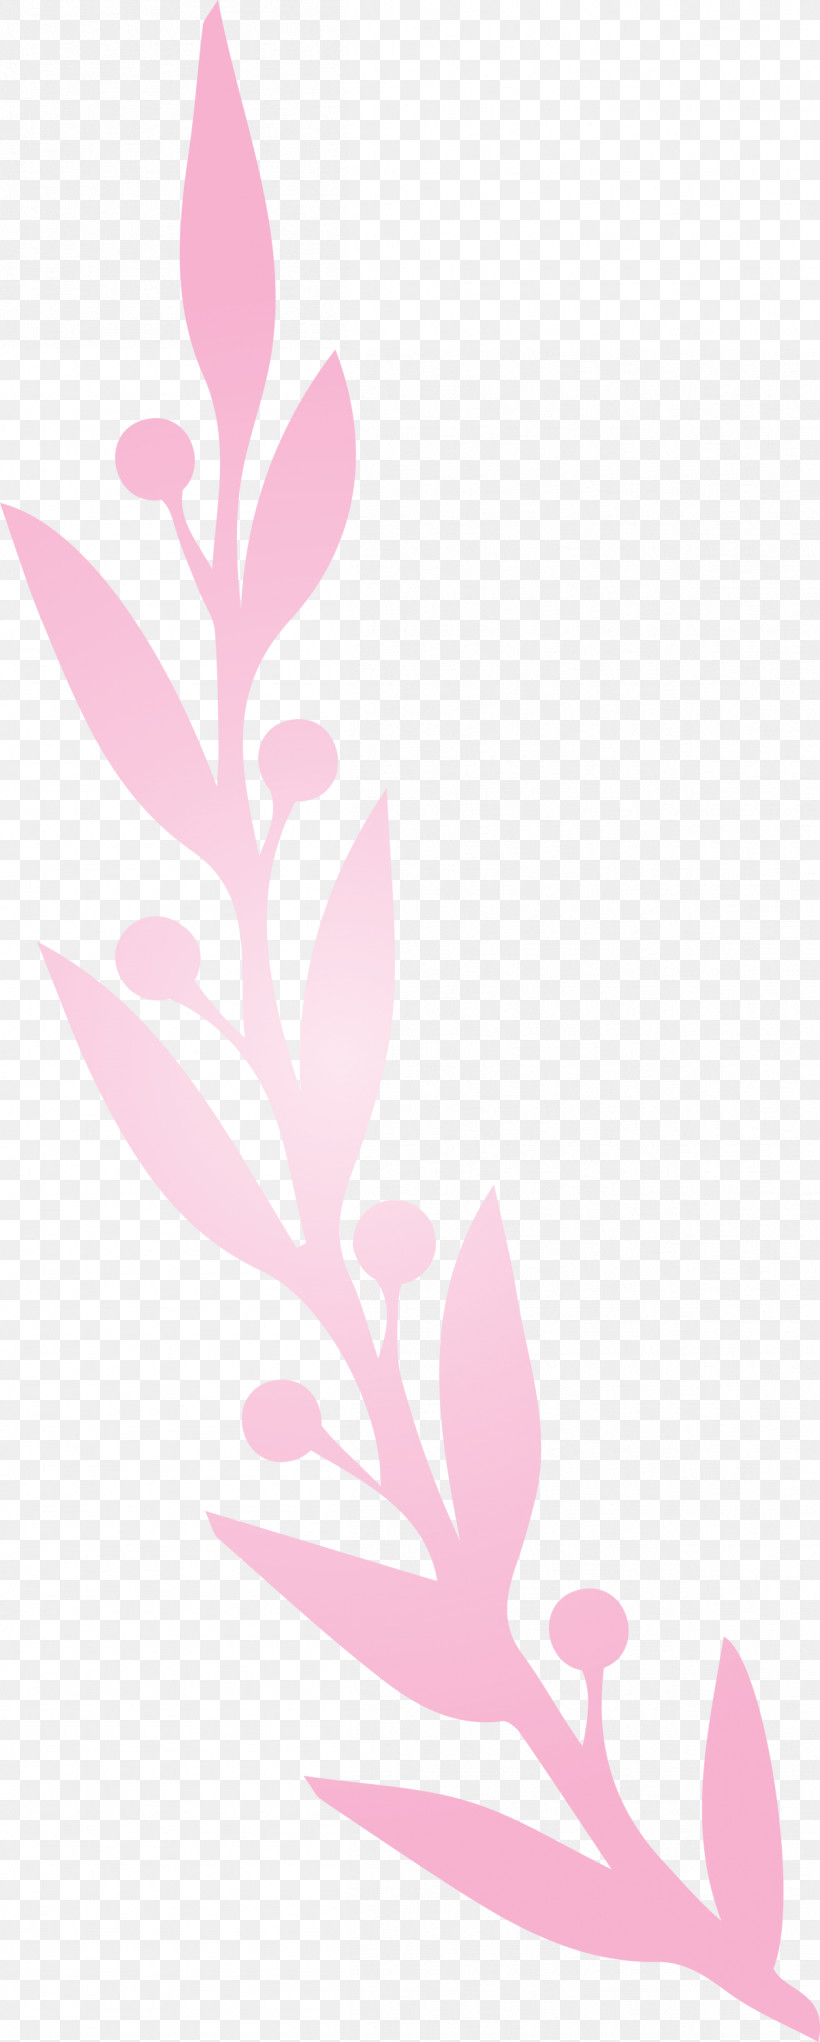 Plant Stem Petal Leaf Twig Pink M, PNG, 1204x2999px, Leaf Cartoon, Biology, Leaf, Leaf Abstract, Leaf Clipart Download Free